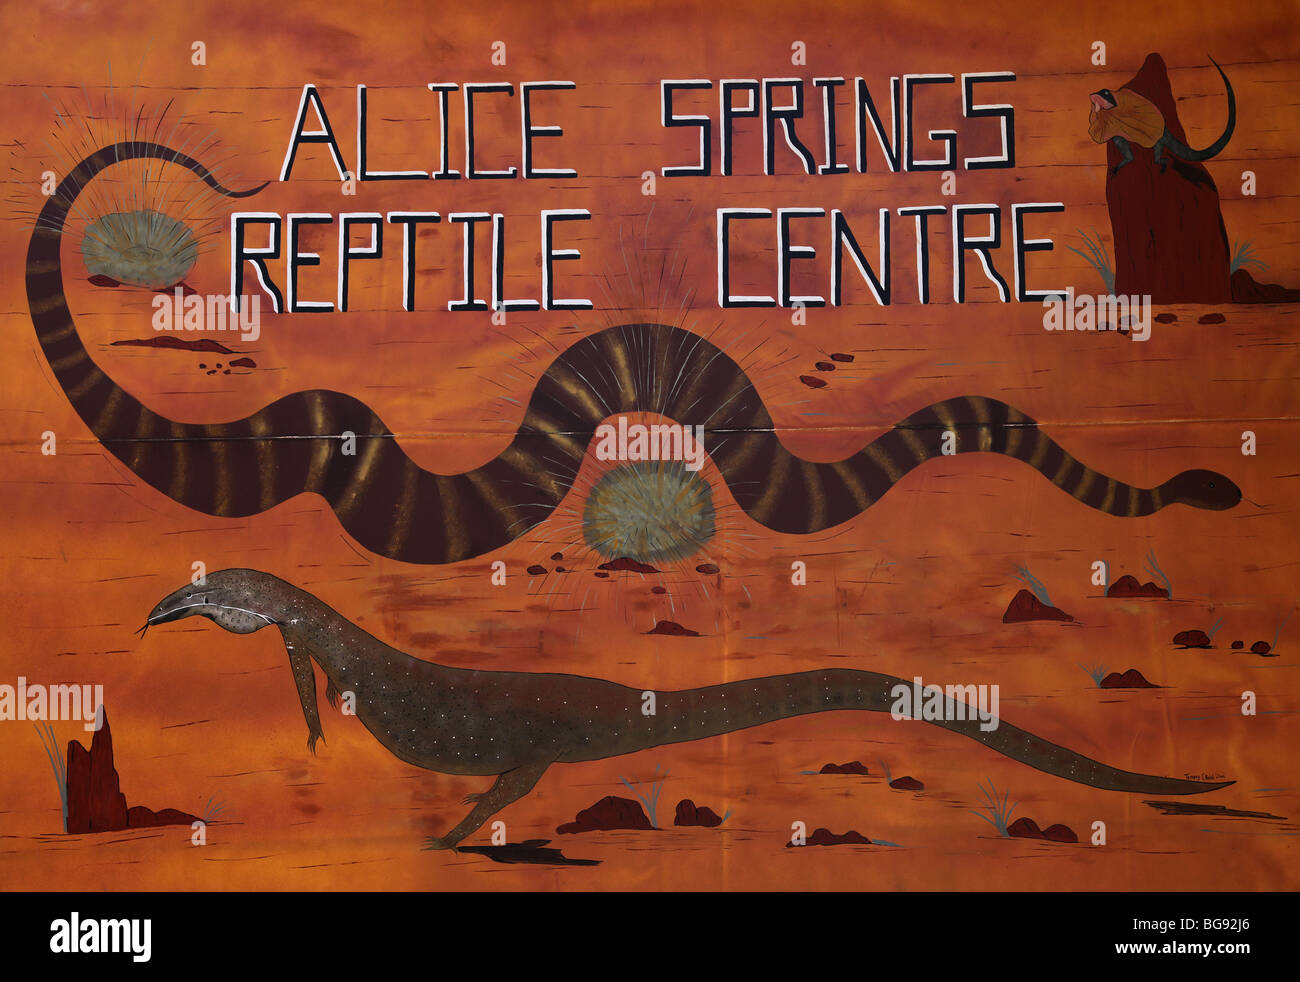 Alice Springs Centro Rettili-NT-Australia Foto Stock